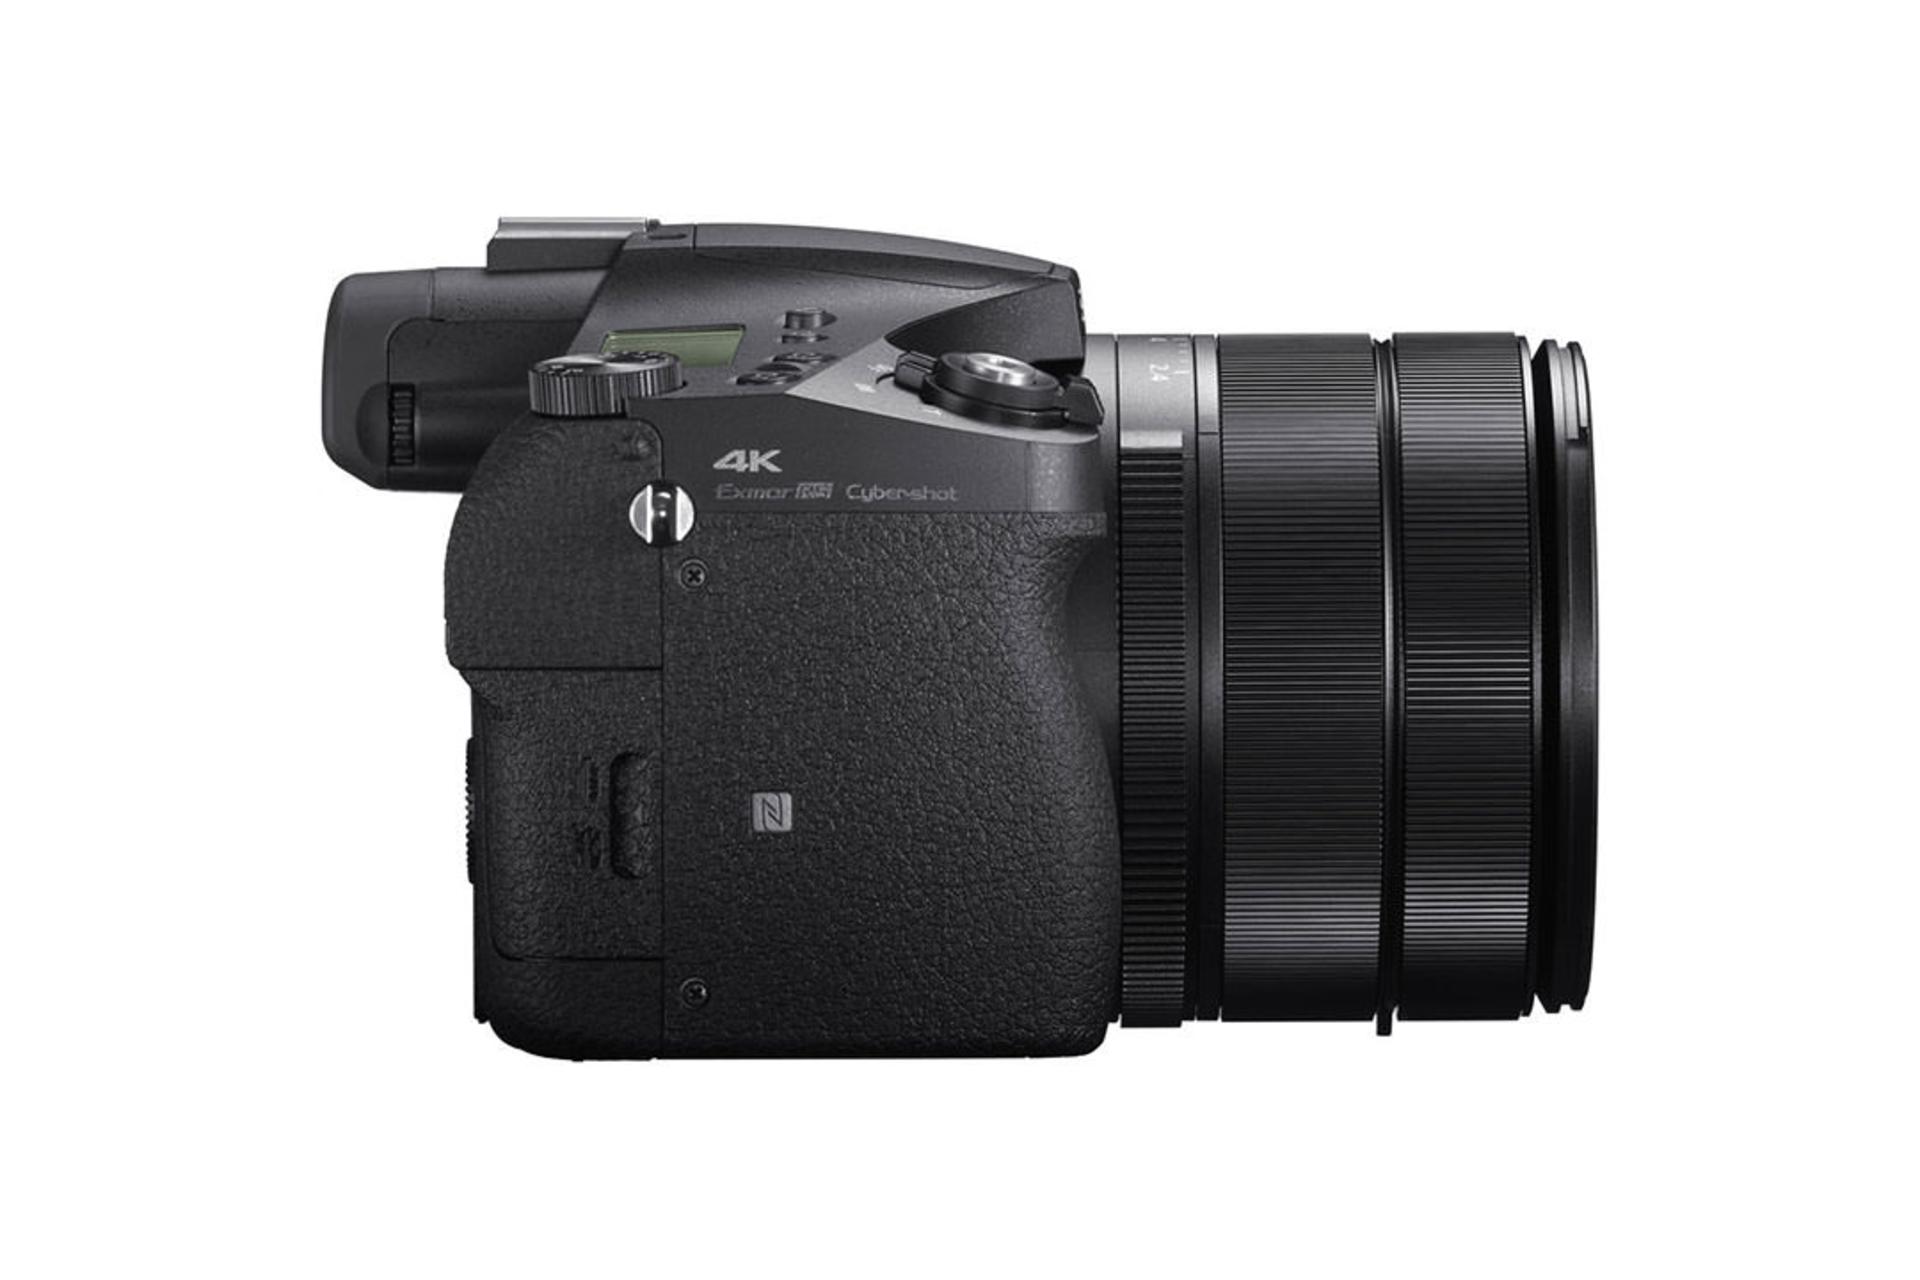 Sony Cyber-shot DSC-RX10 IV	